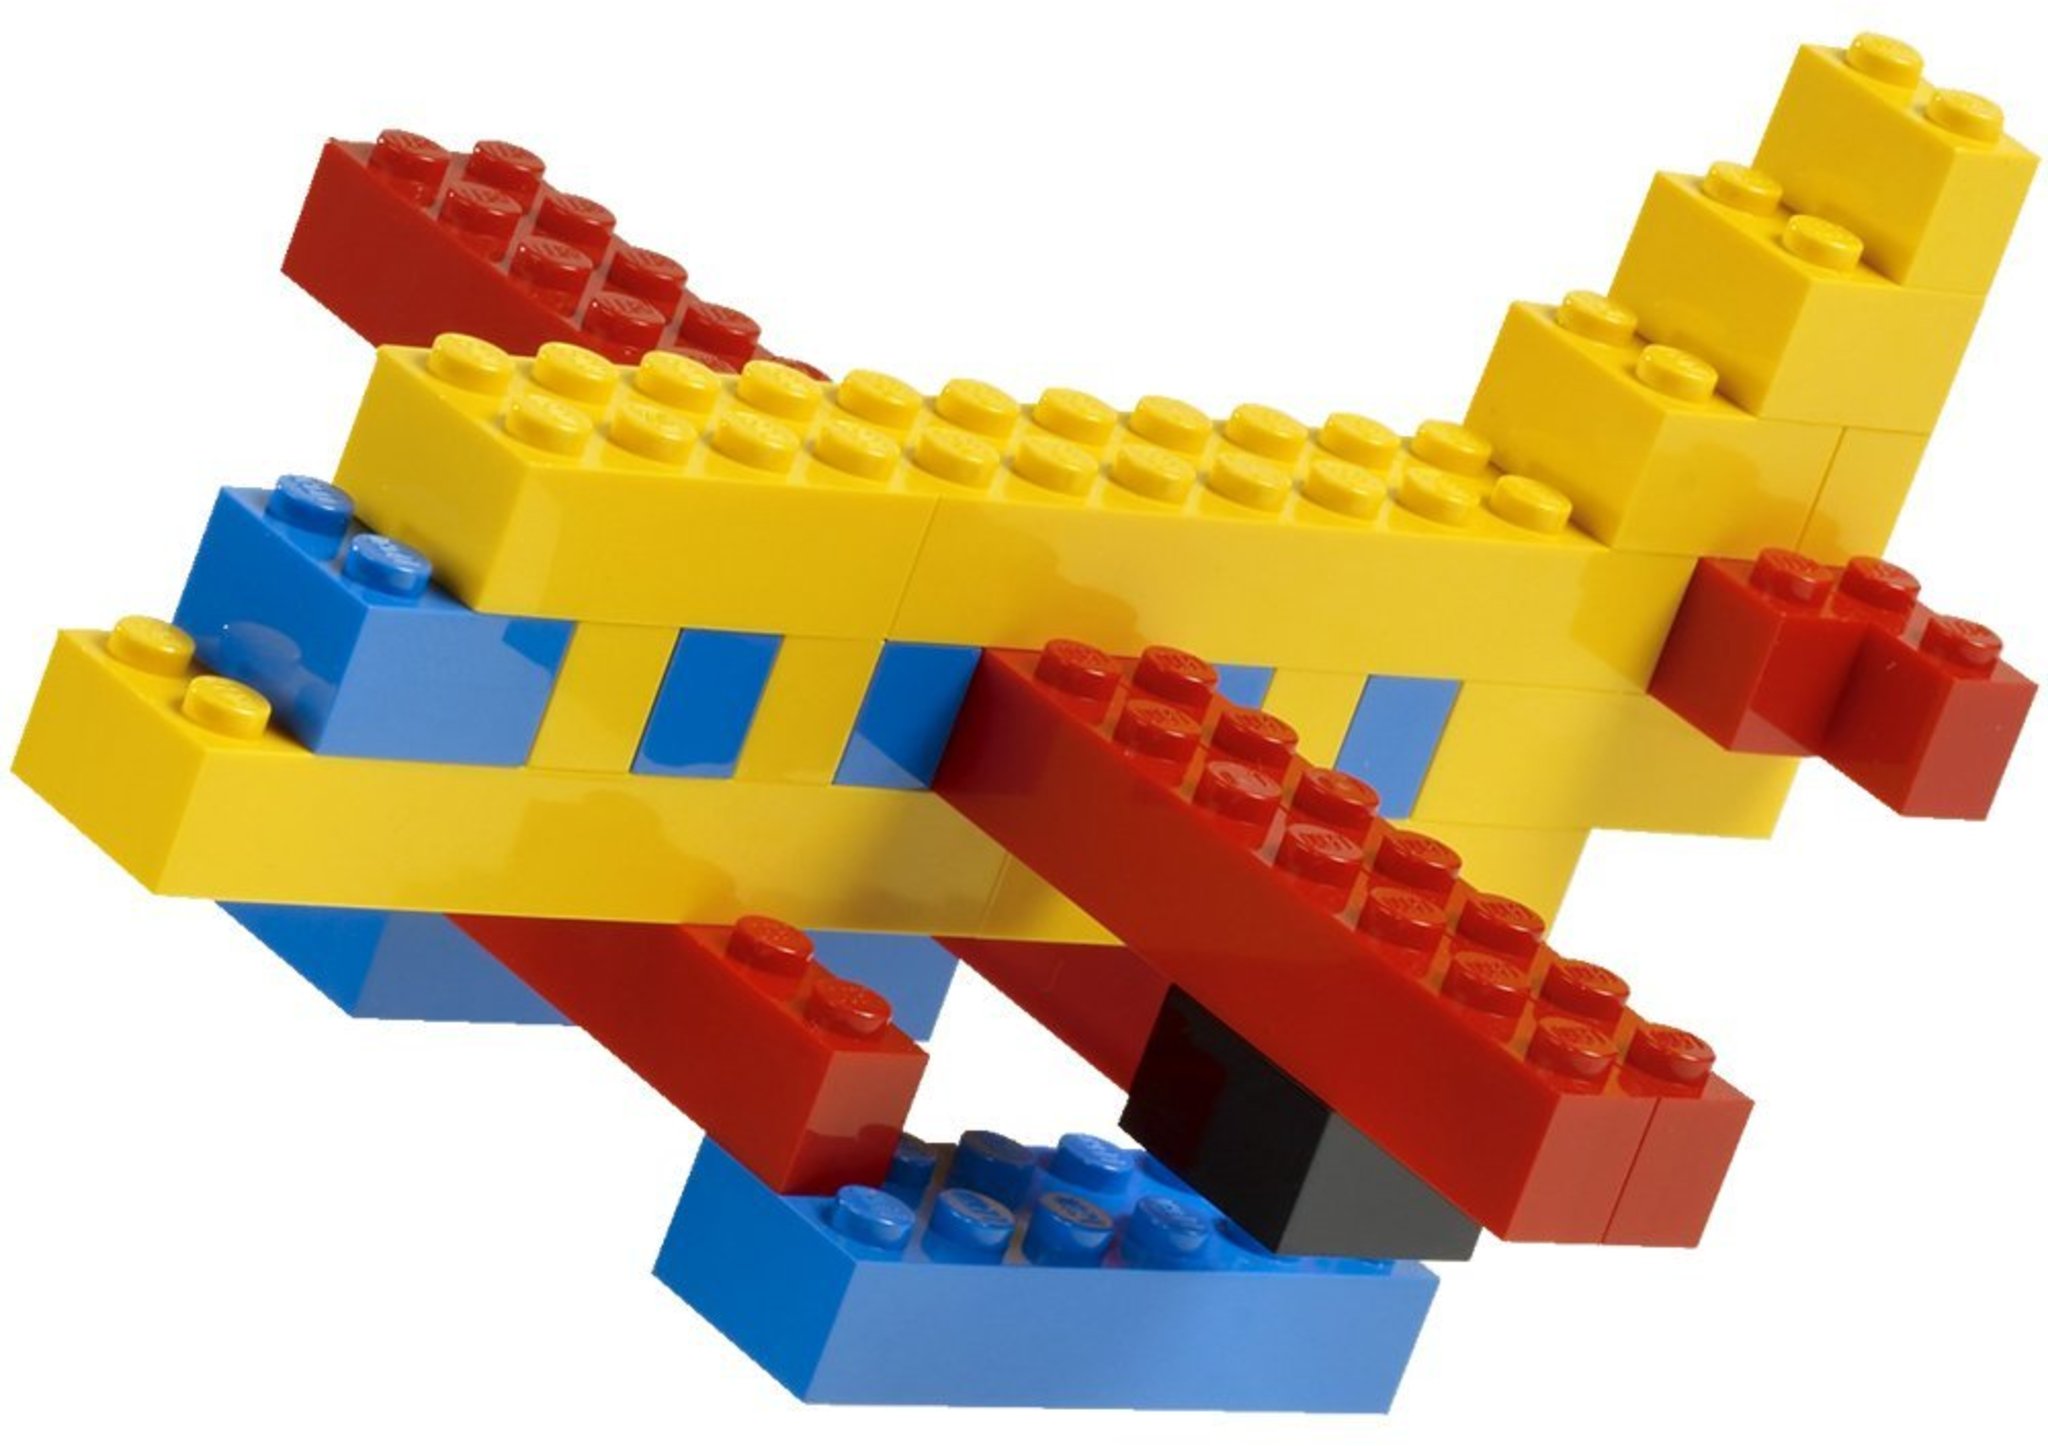 LEGO Bricks And More 6177 - Basic Bricks Deluxe | Mattonito